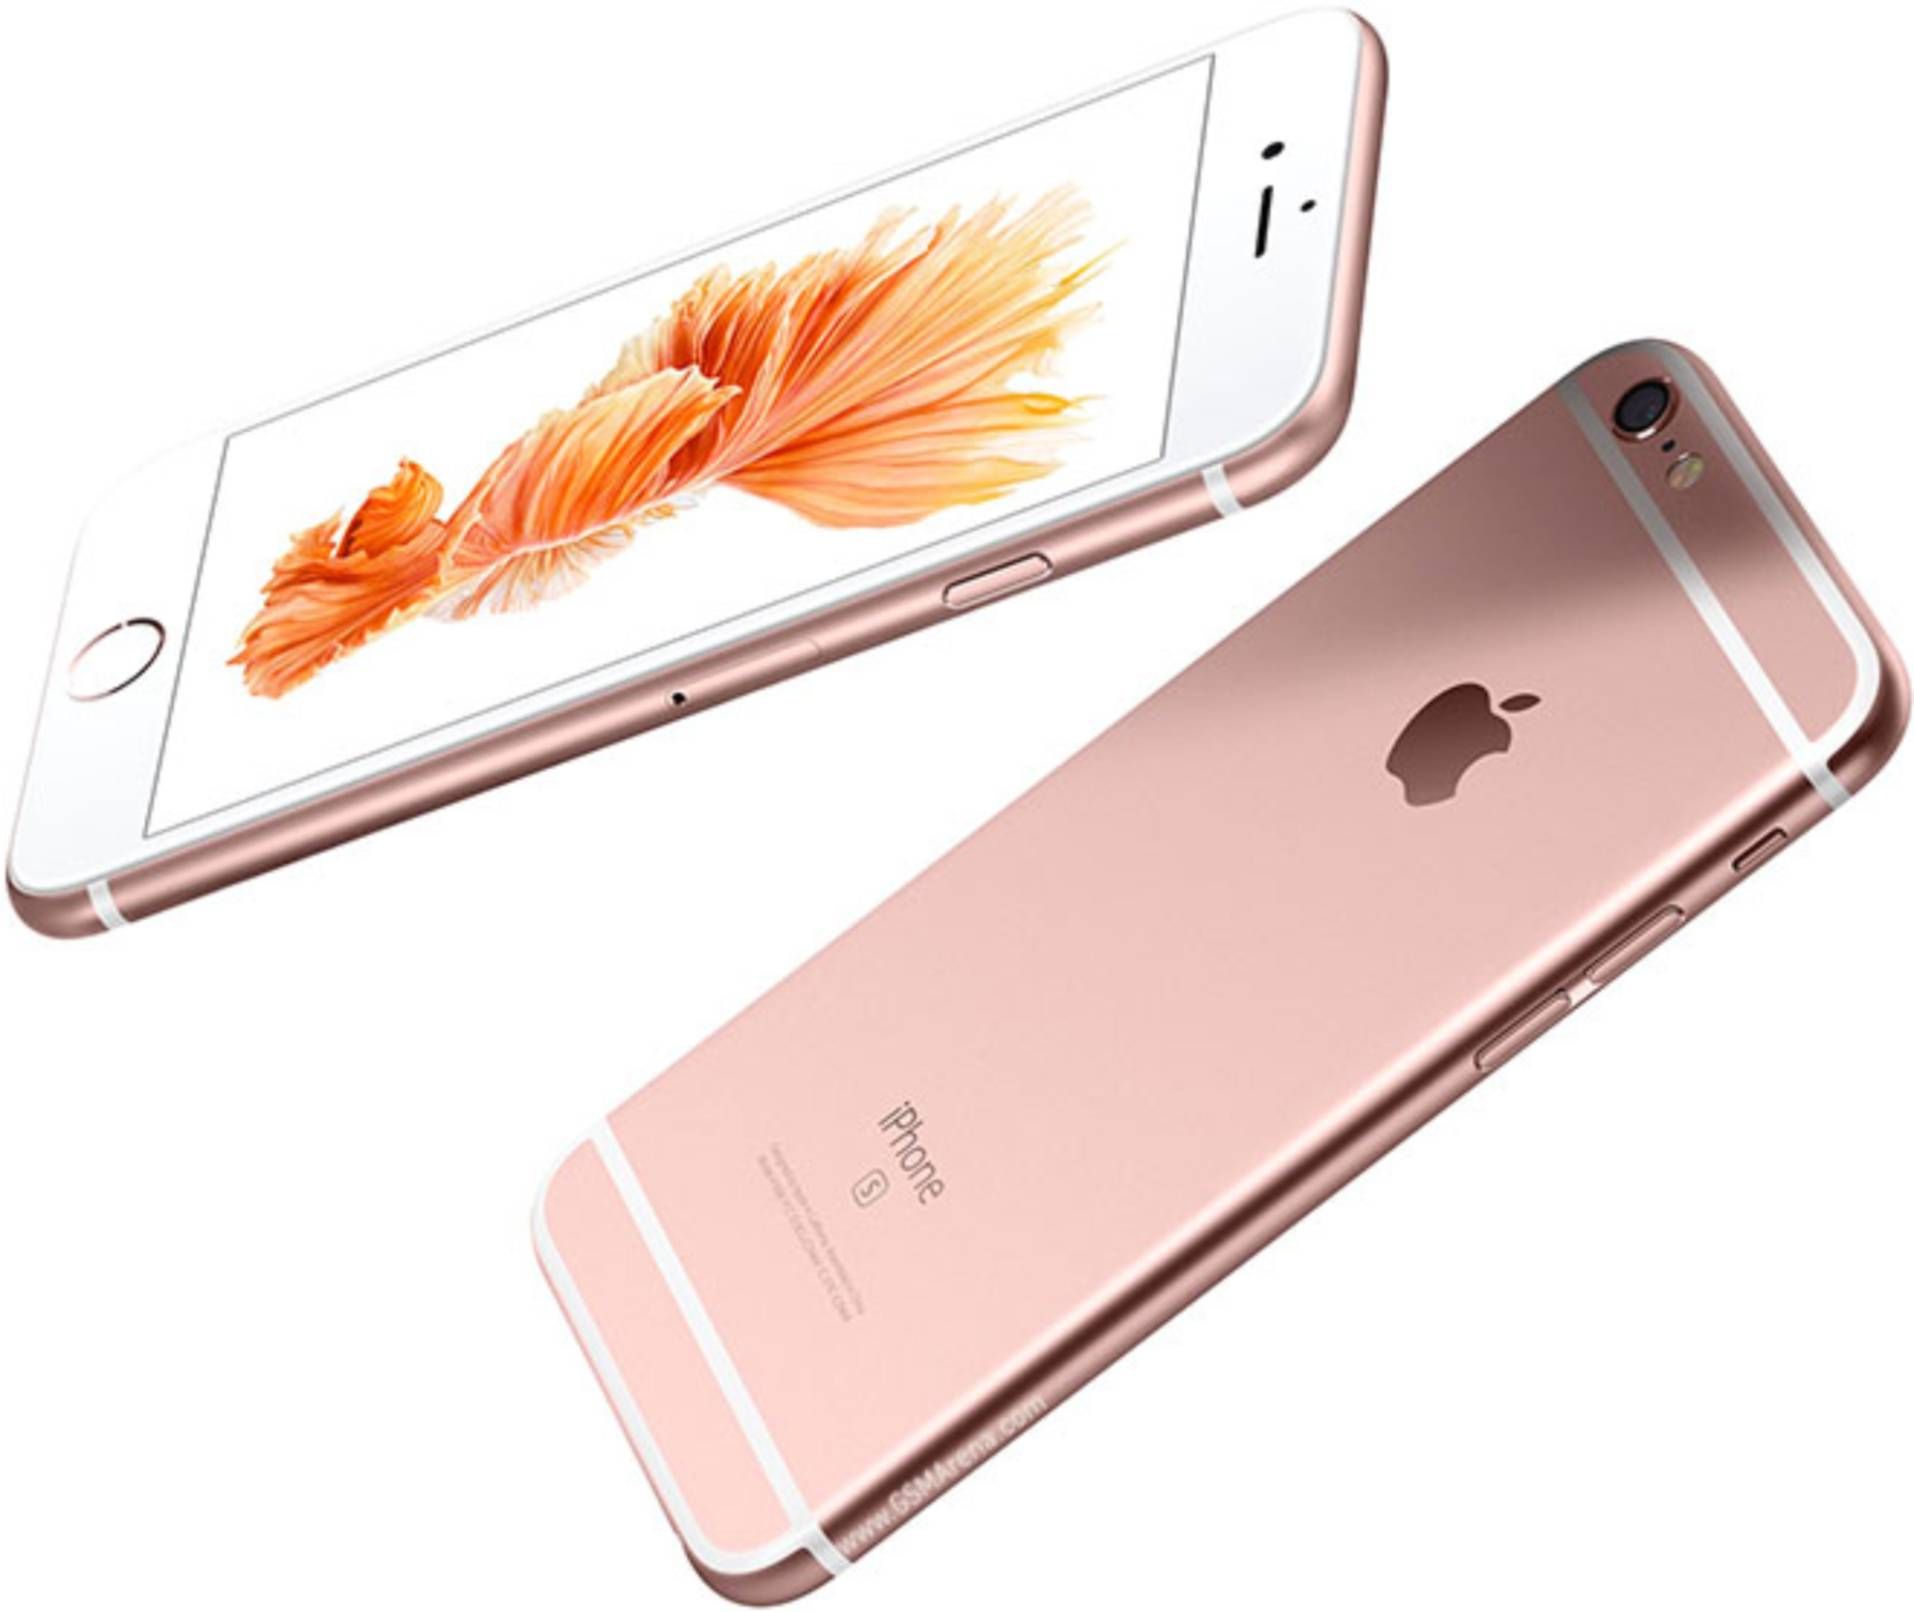 iPhone 6s 64GB Price in Kisumu 